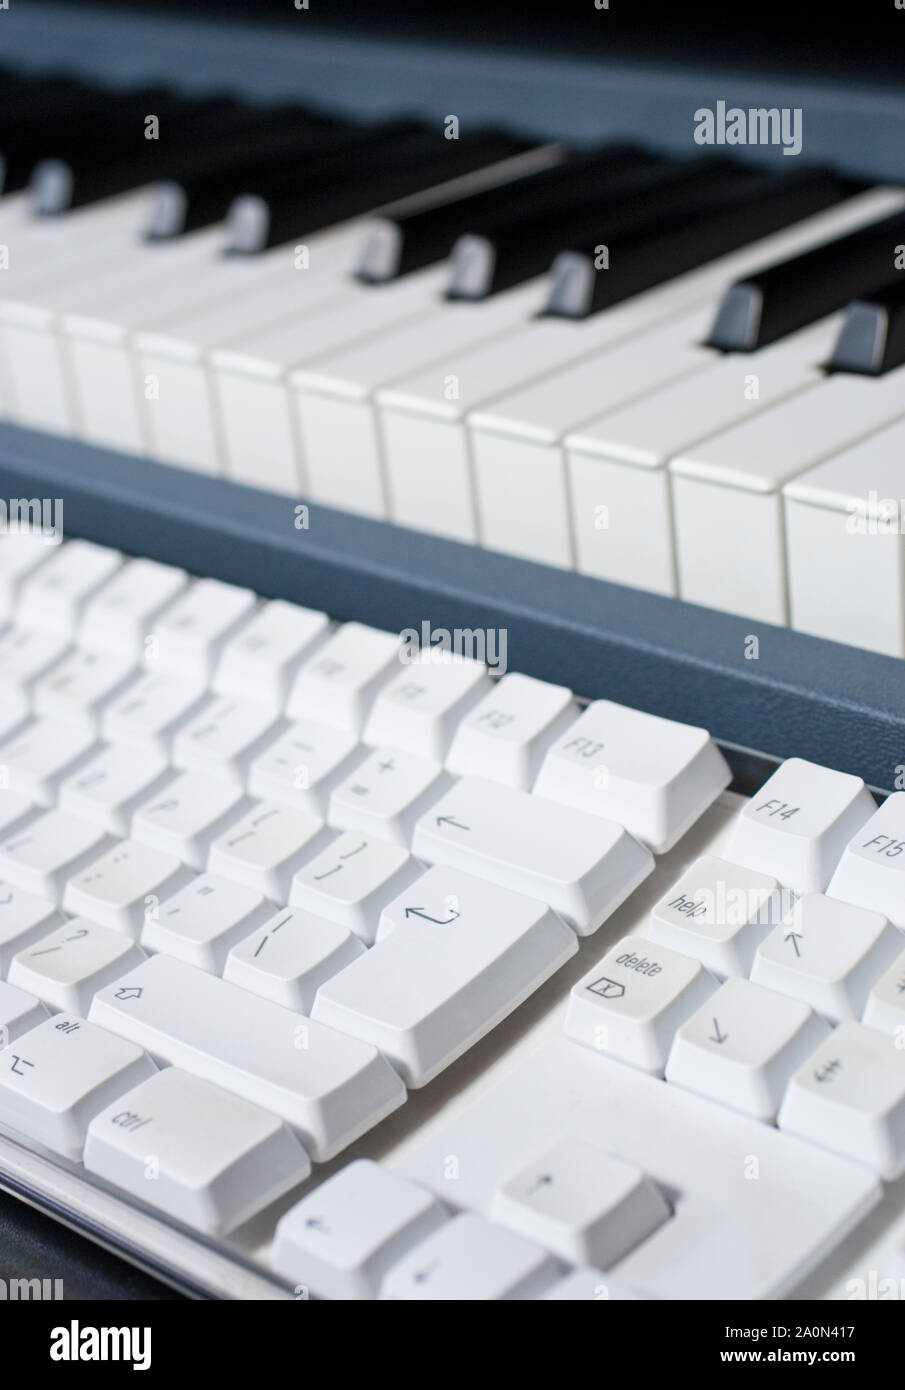 Clavier musical et clavier de l'ordinateur utilisé pour la composition à l'ère numérique Banque D'Images